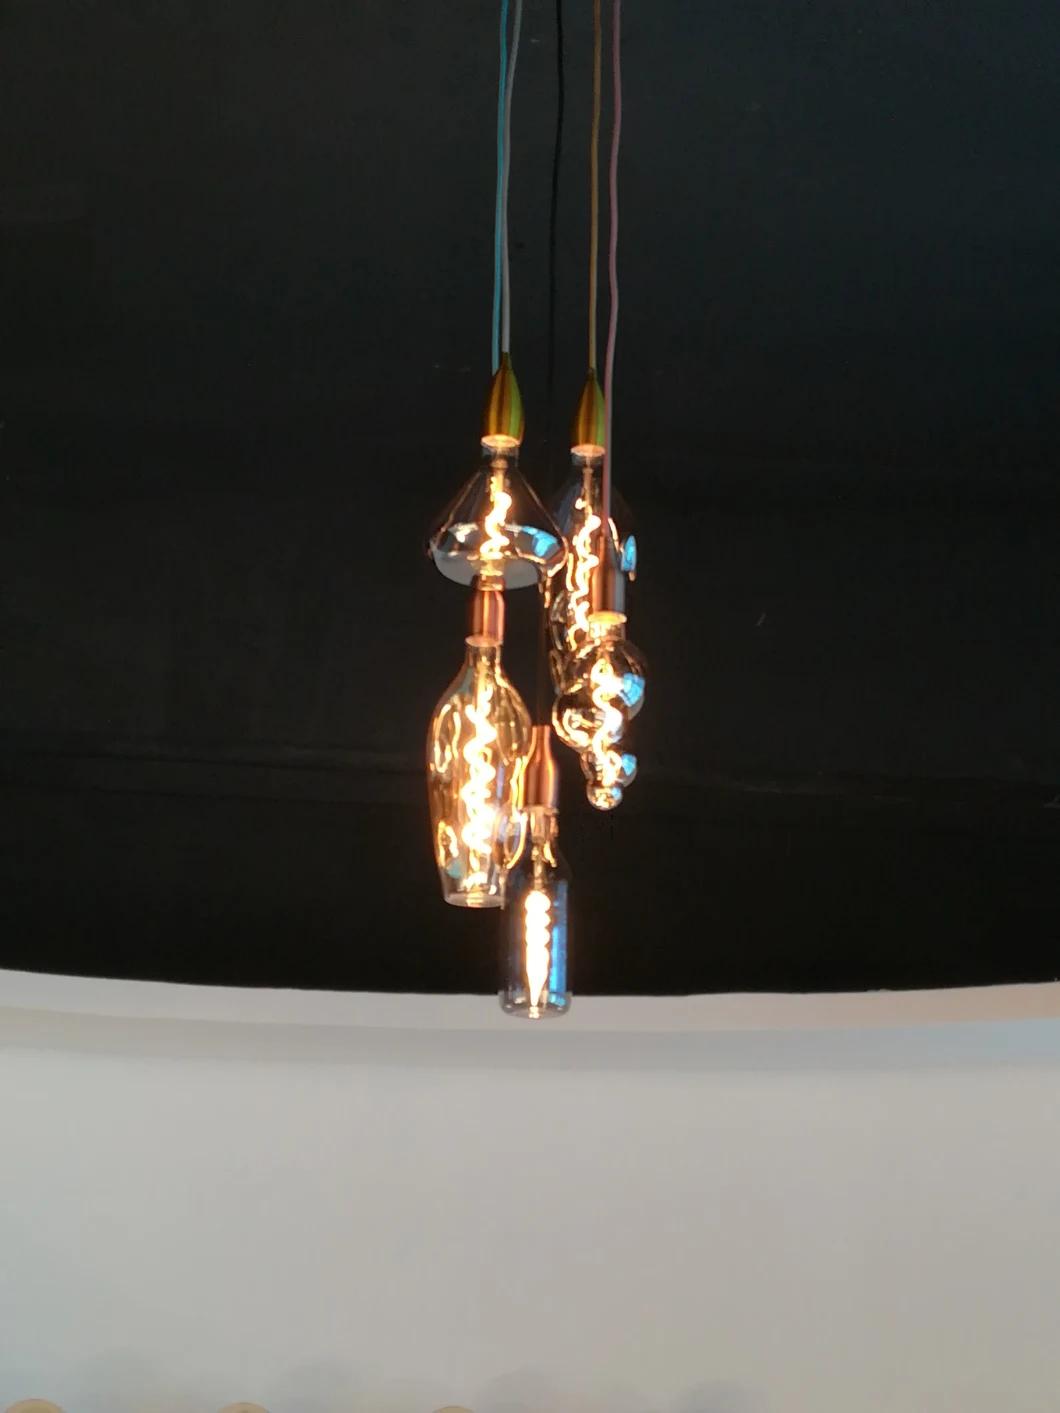 Polyangular Bottle Shape Modern Design Flexible Filament Glass LED Light Bulb